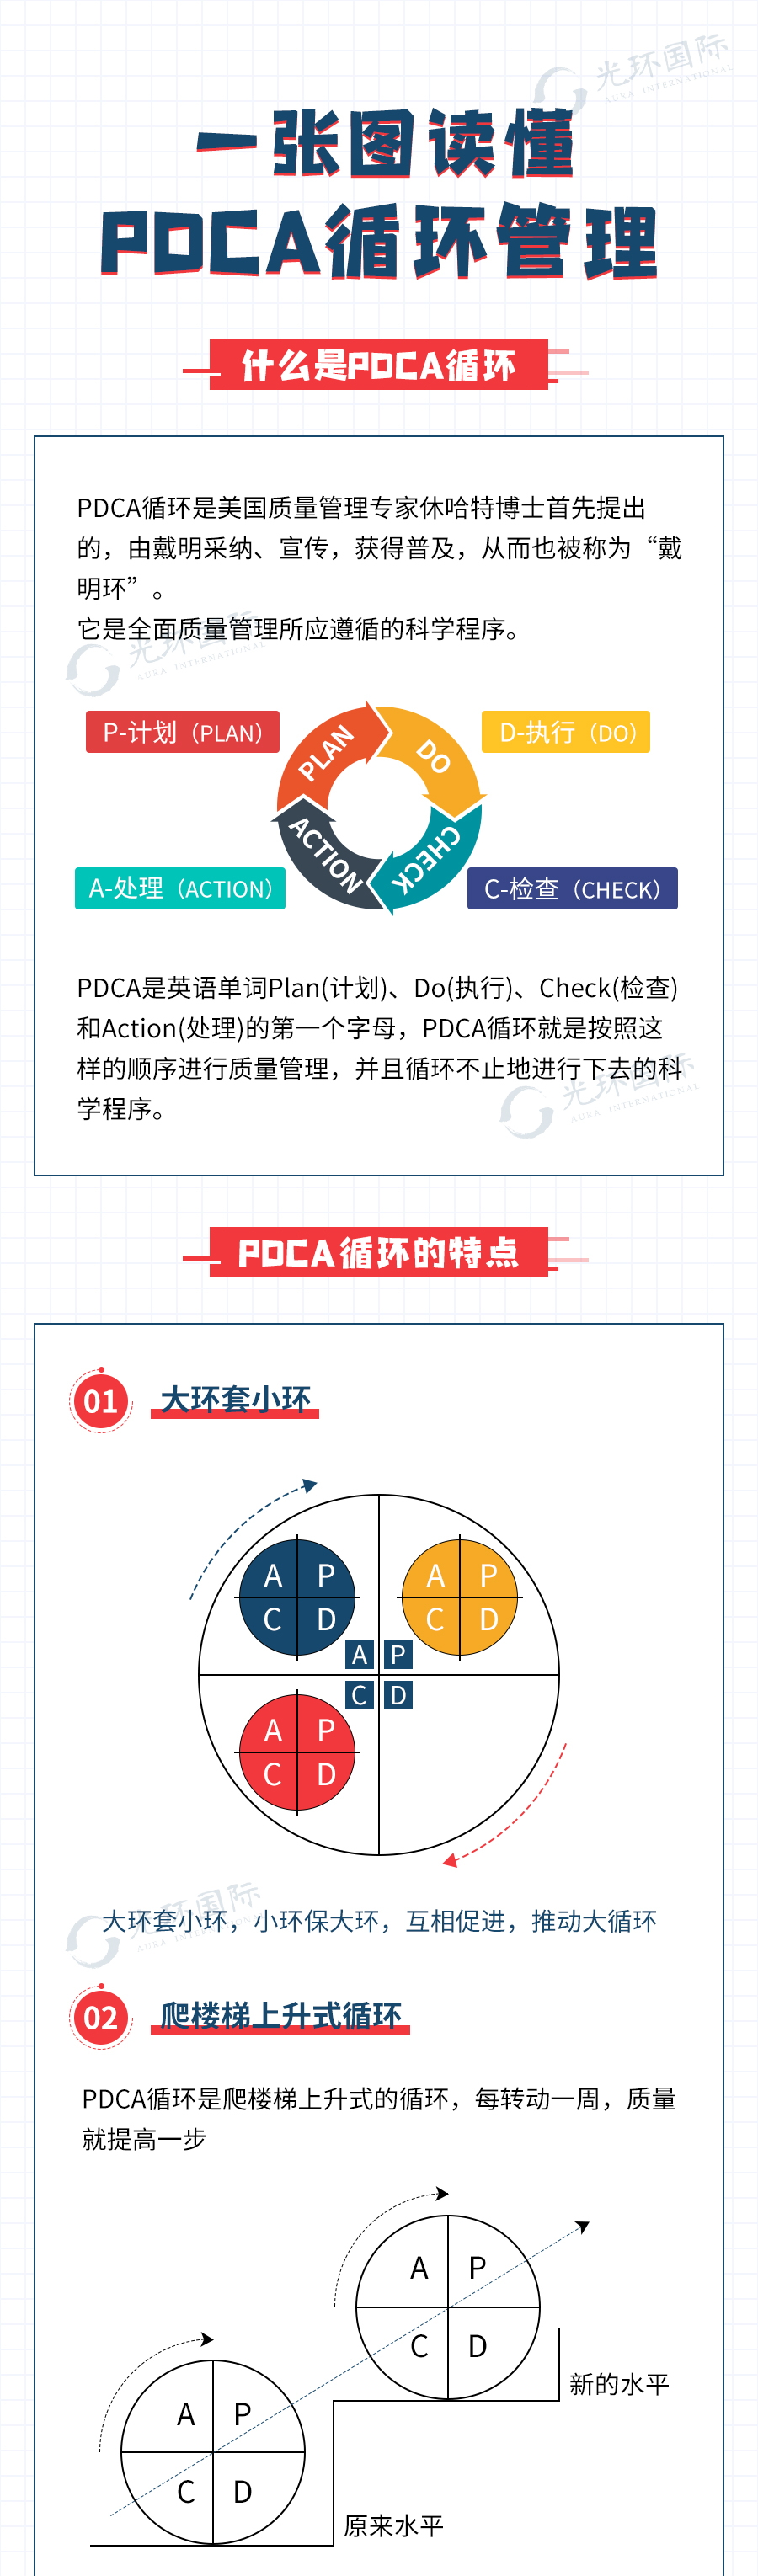 一张图读懂PDCA循环管理5